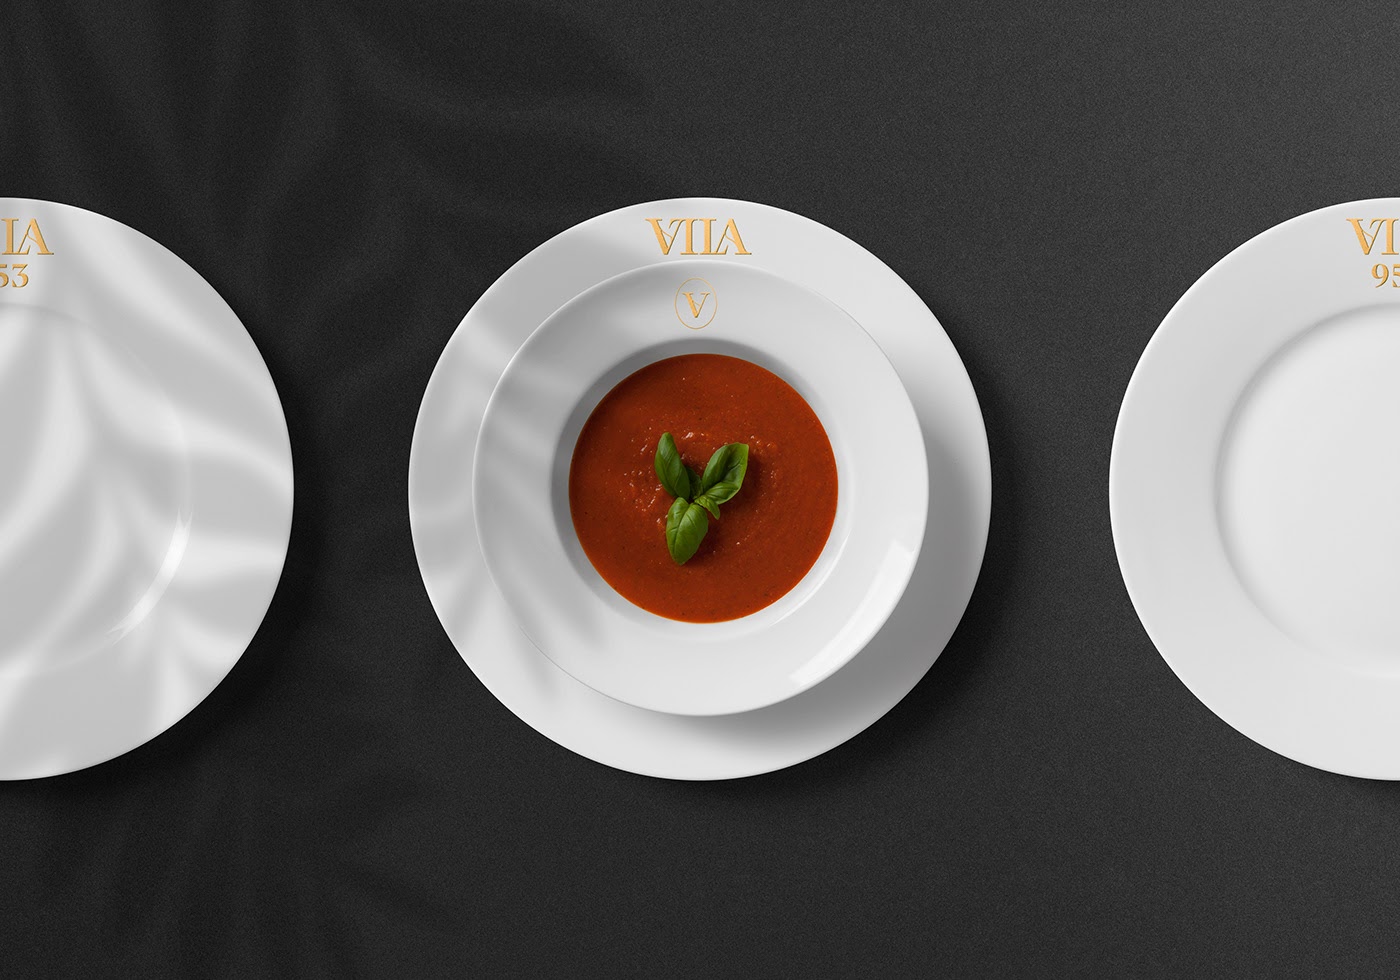 Vila 953餐厅品牌视觉设计